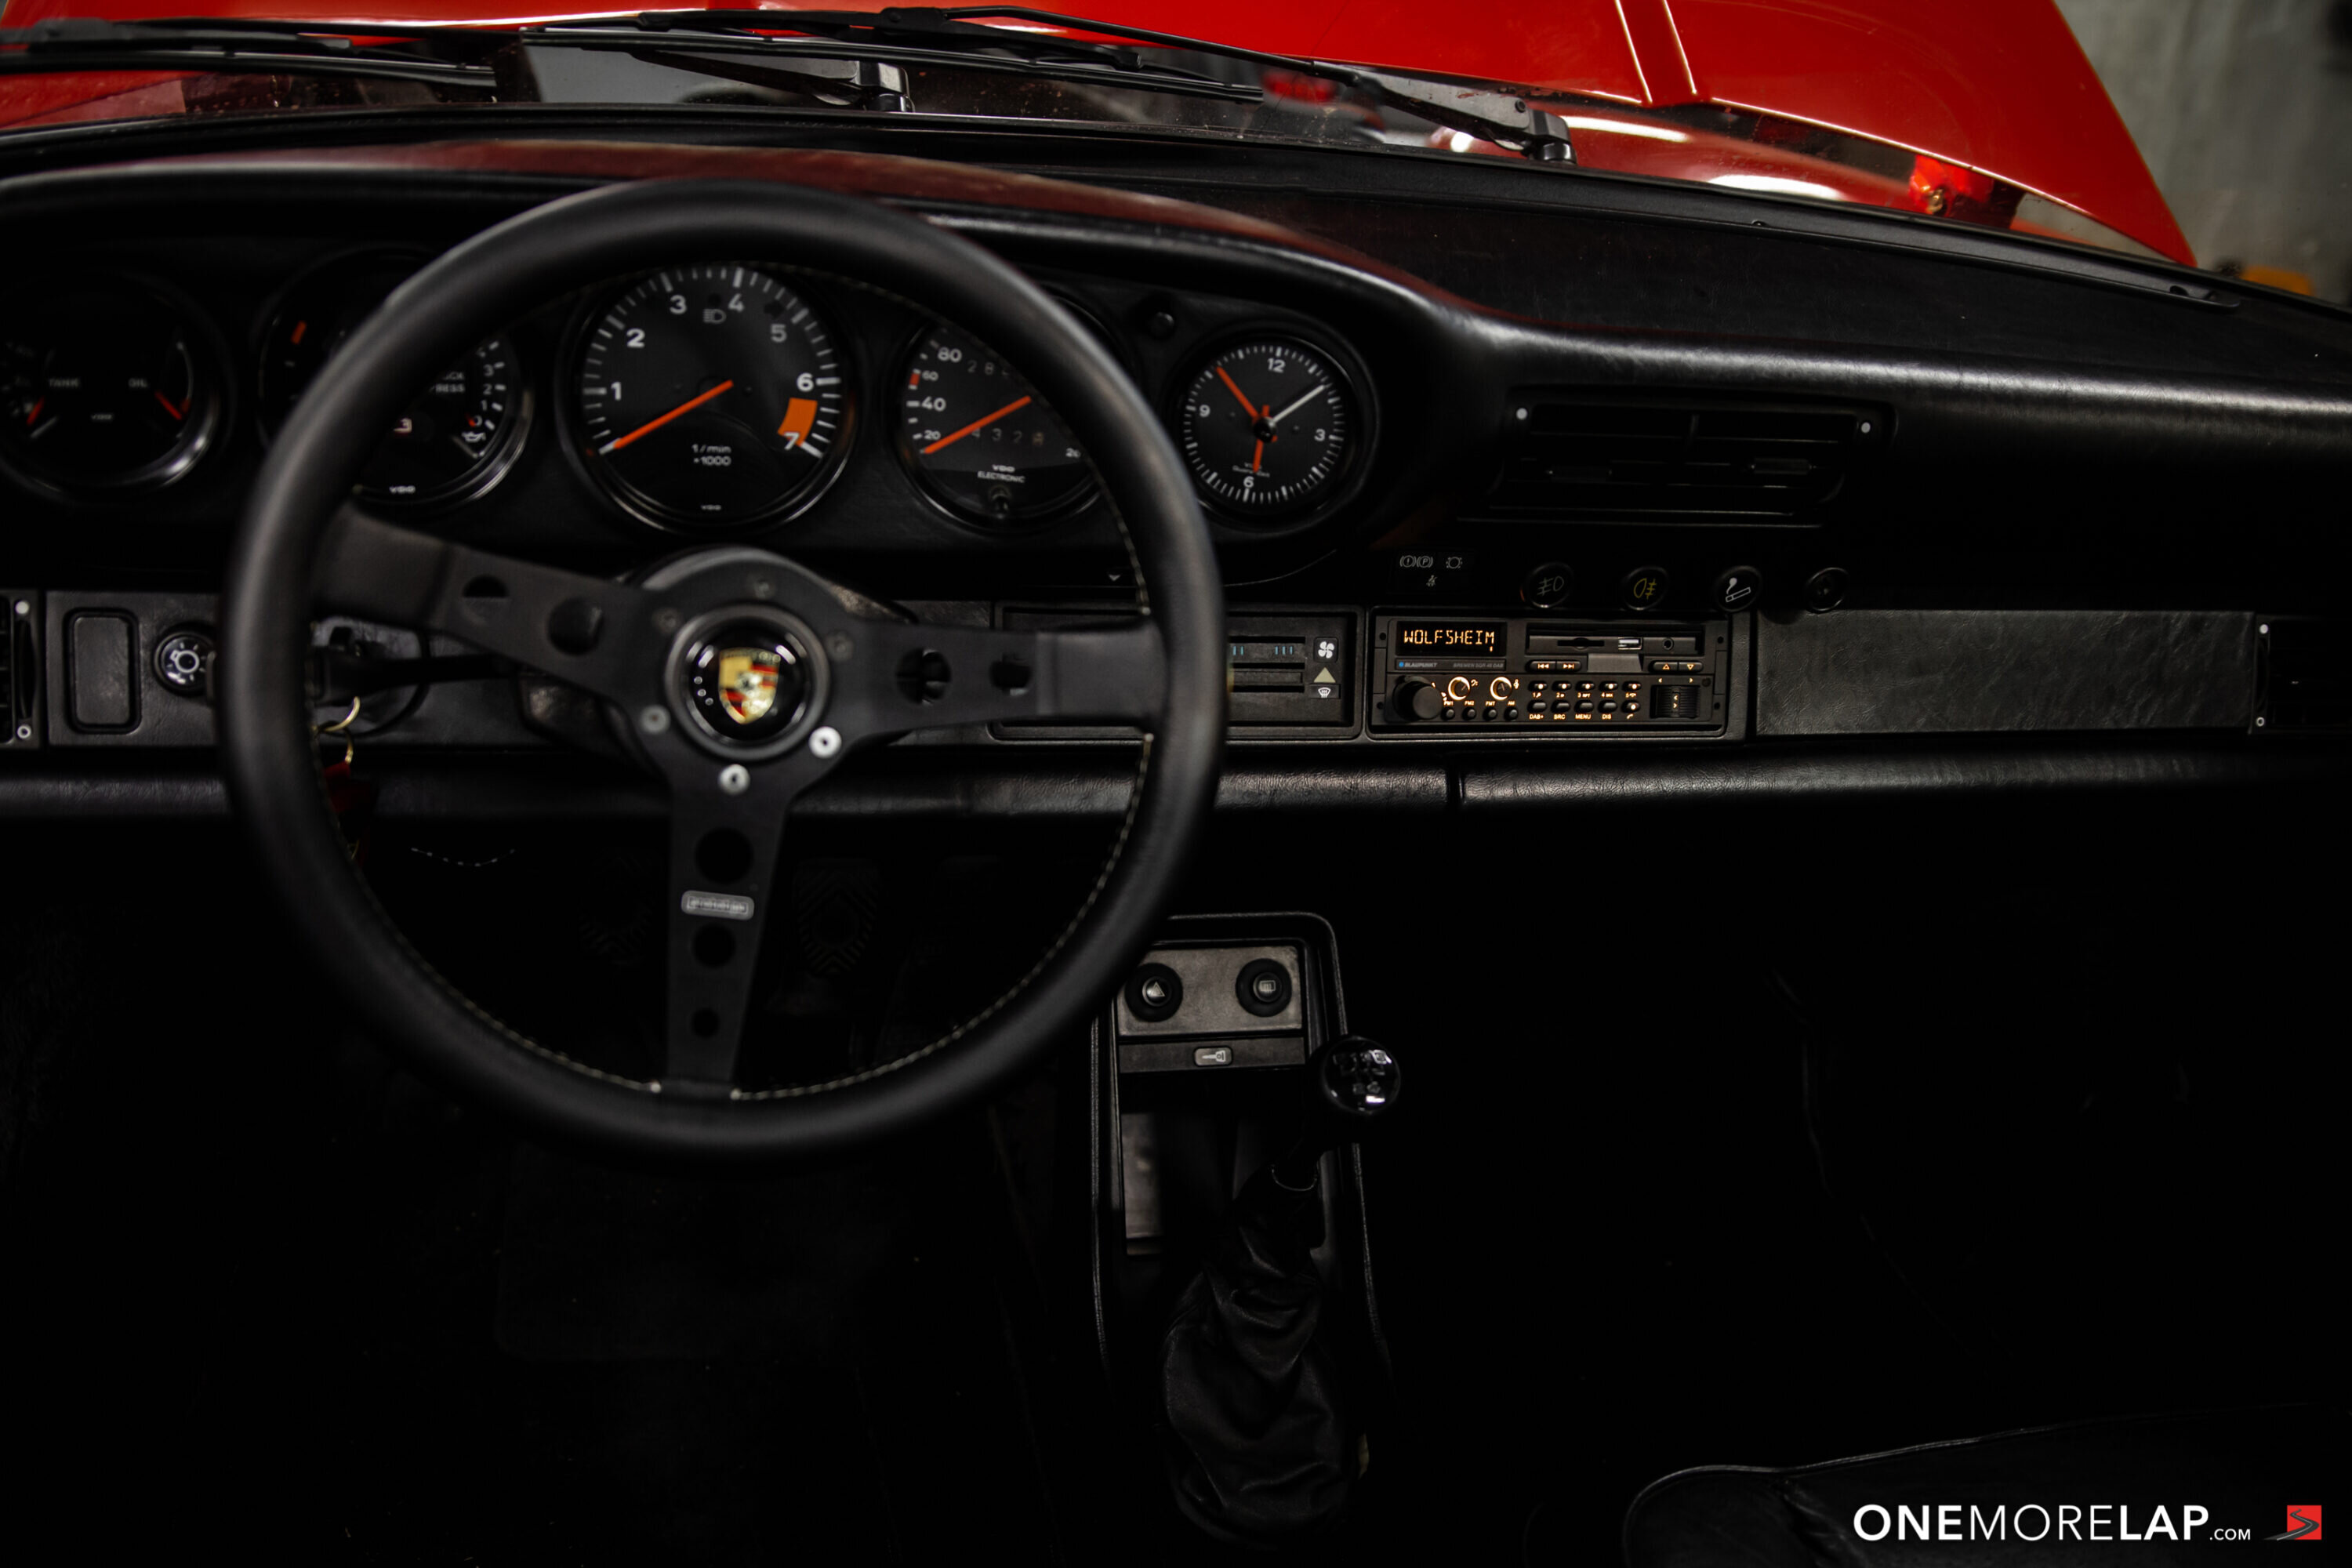 Erfahrungsbericht / Einbauanleitung / Test: Blaupunkt Bremen SQR 46 DAB im Porsche 911 Carrera 3.2 Targa (G-Modell) von 1988 – Das perfekte Autoradio für Young- und Oldtimer?